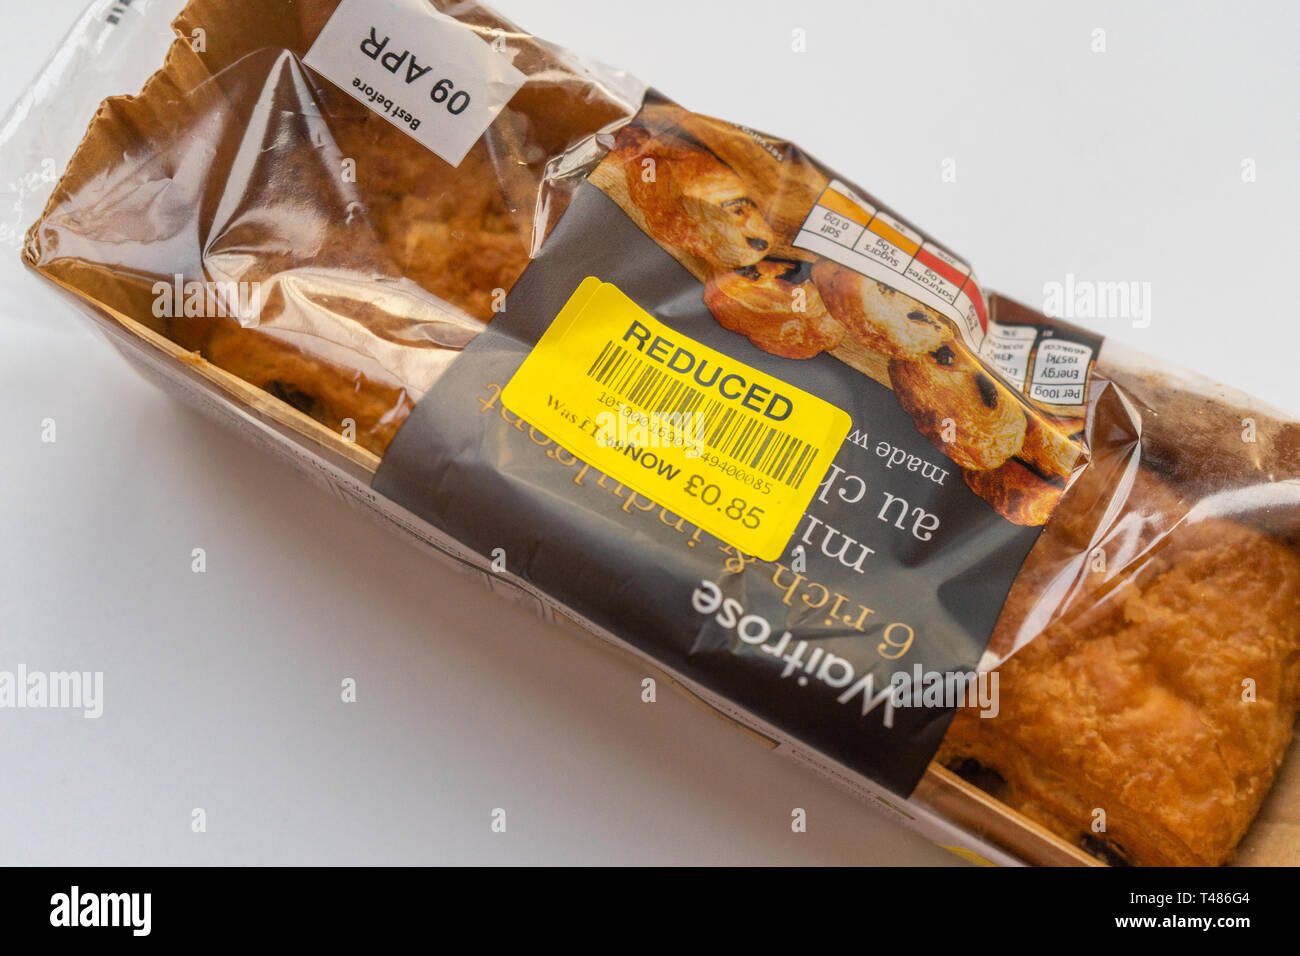 Las etiquetas de los alimentos a precio reducido amarillo encontrado en una bolsa de dolores au chocolate desde un supermercado Waitrose Foto de stock